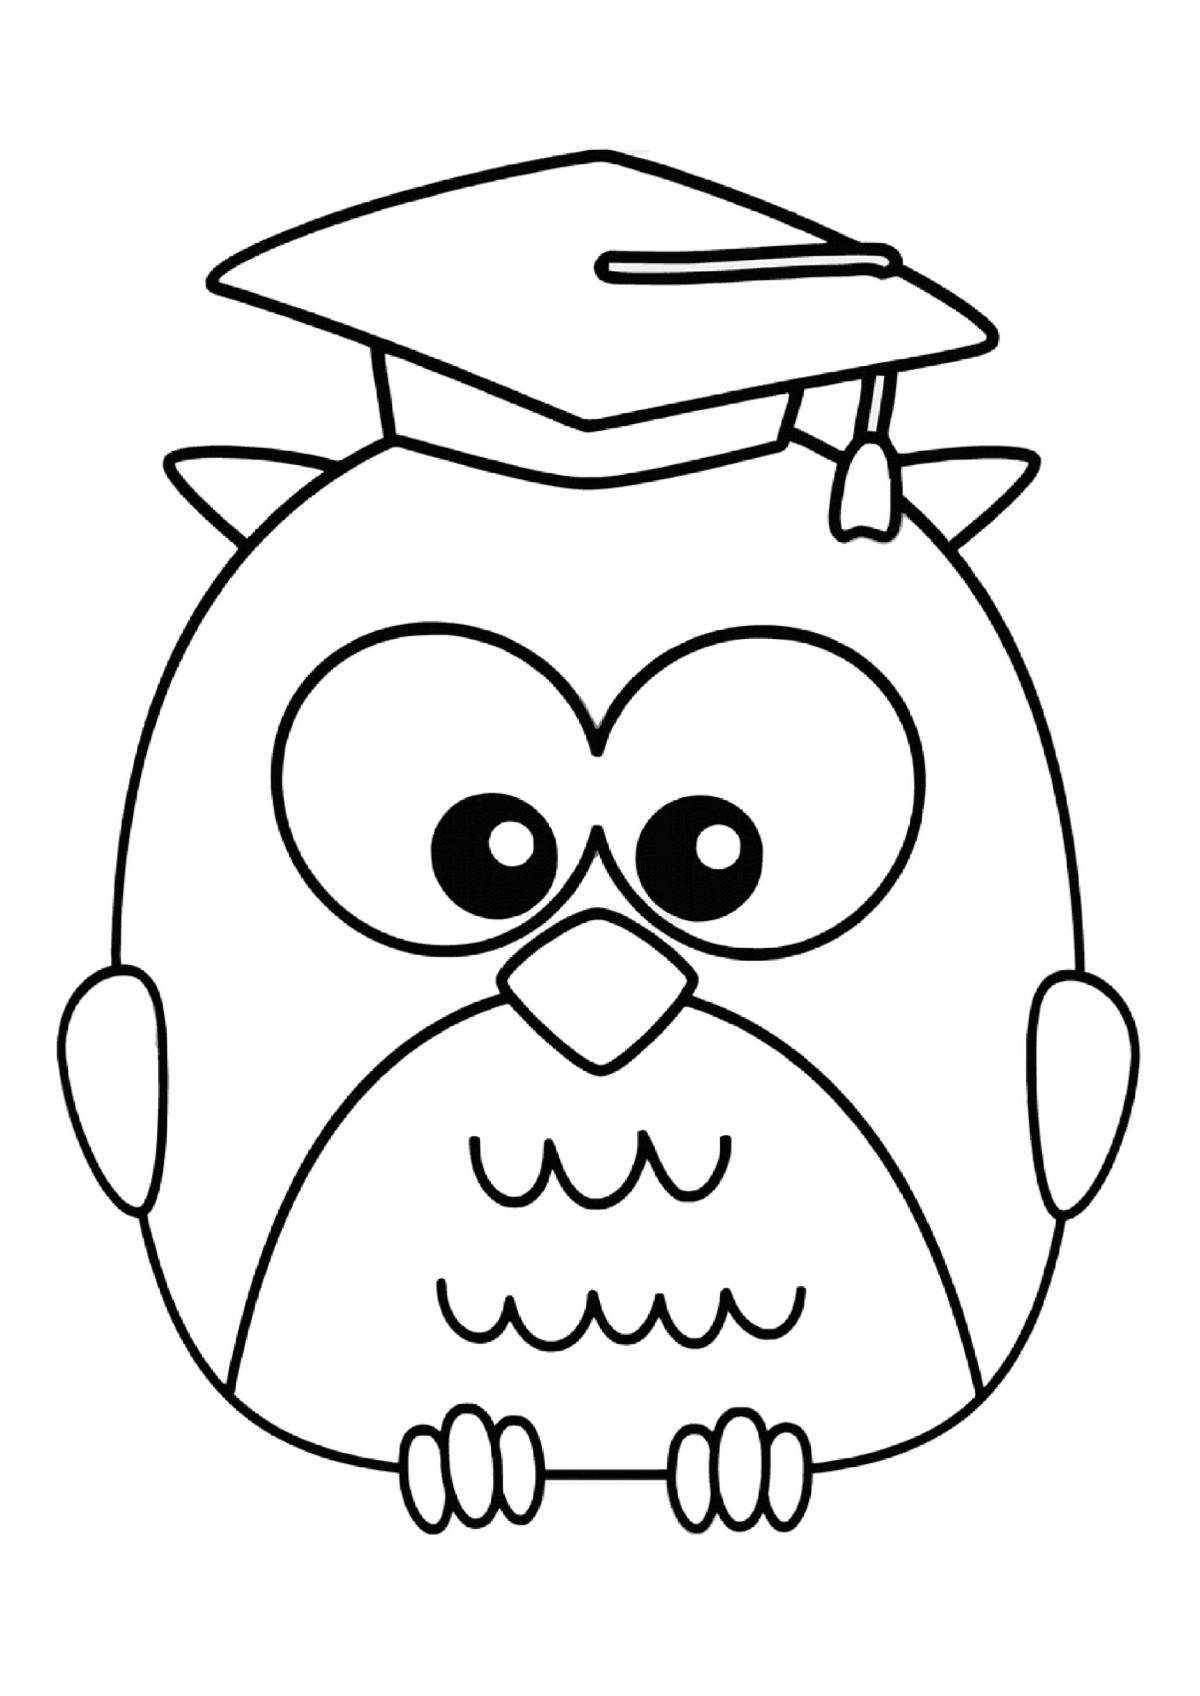 Fun coloring book of smart owl